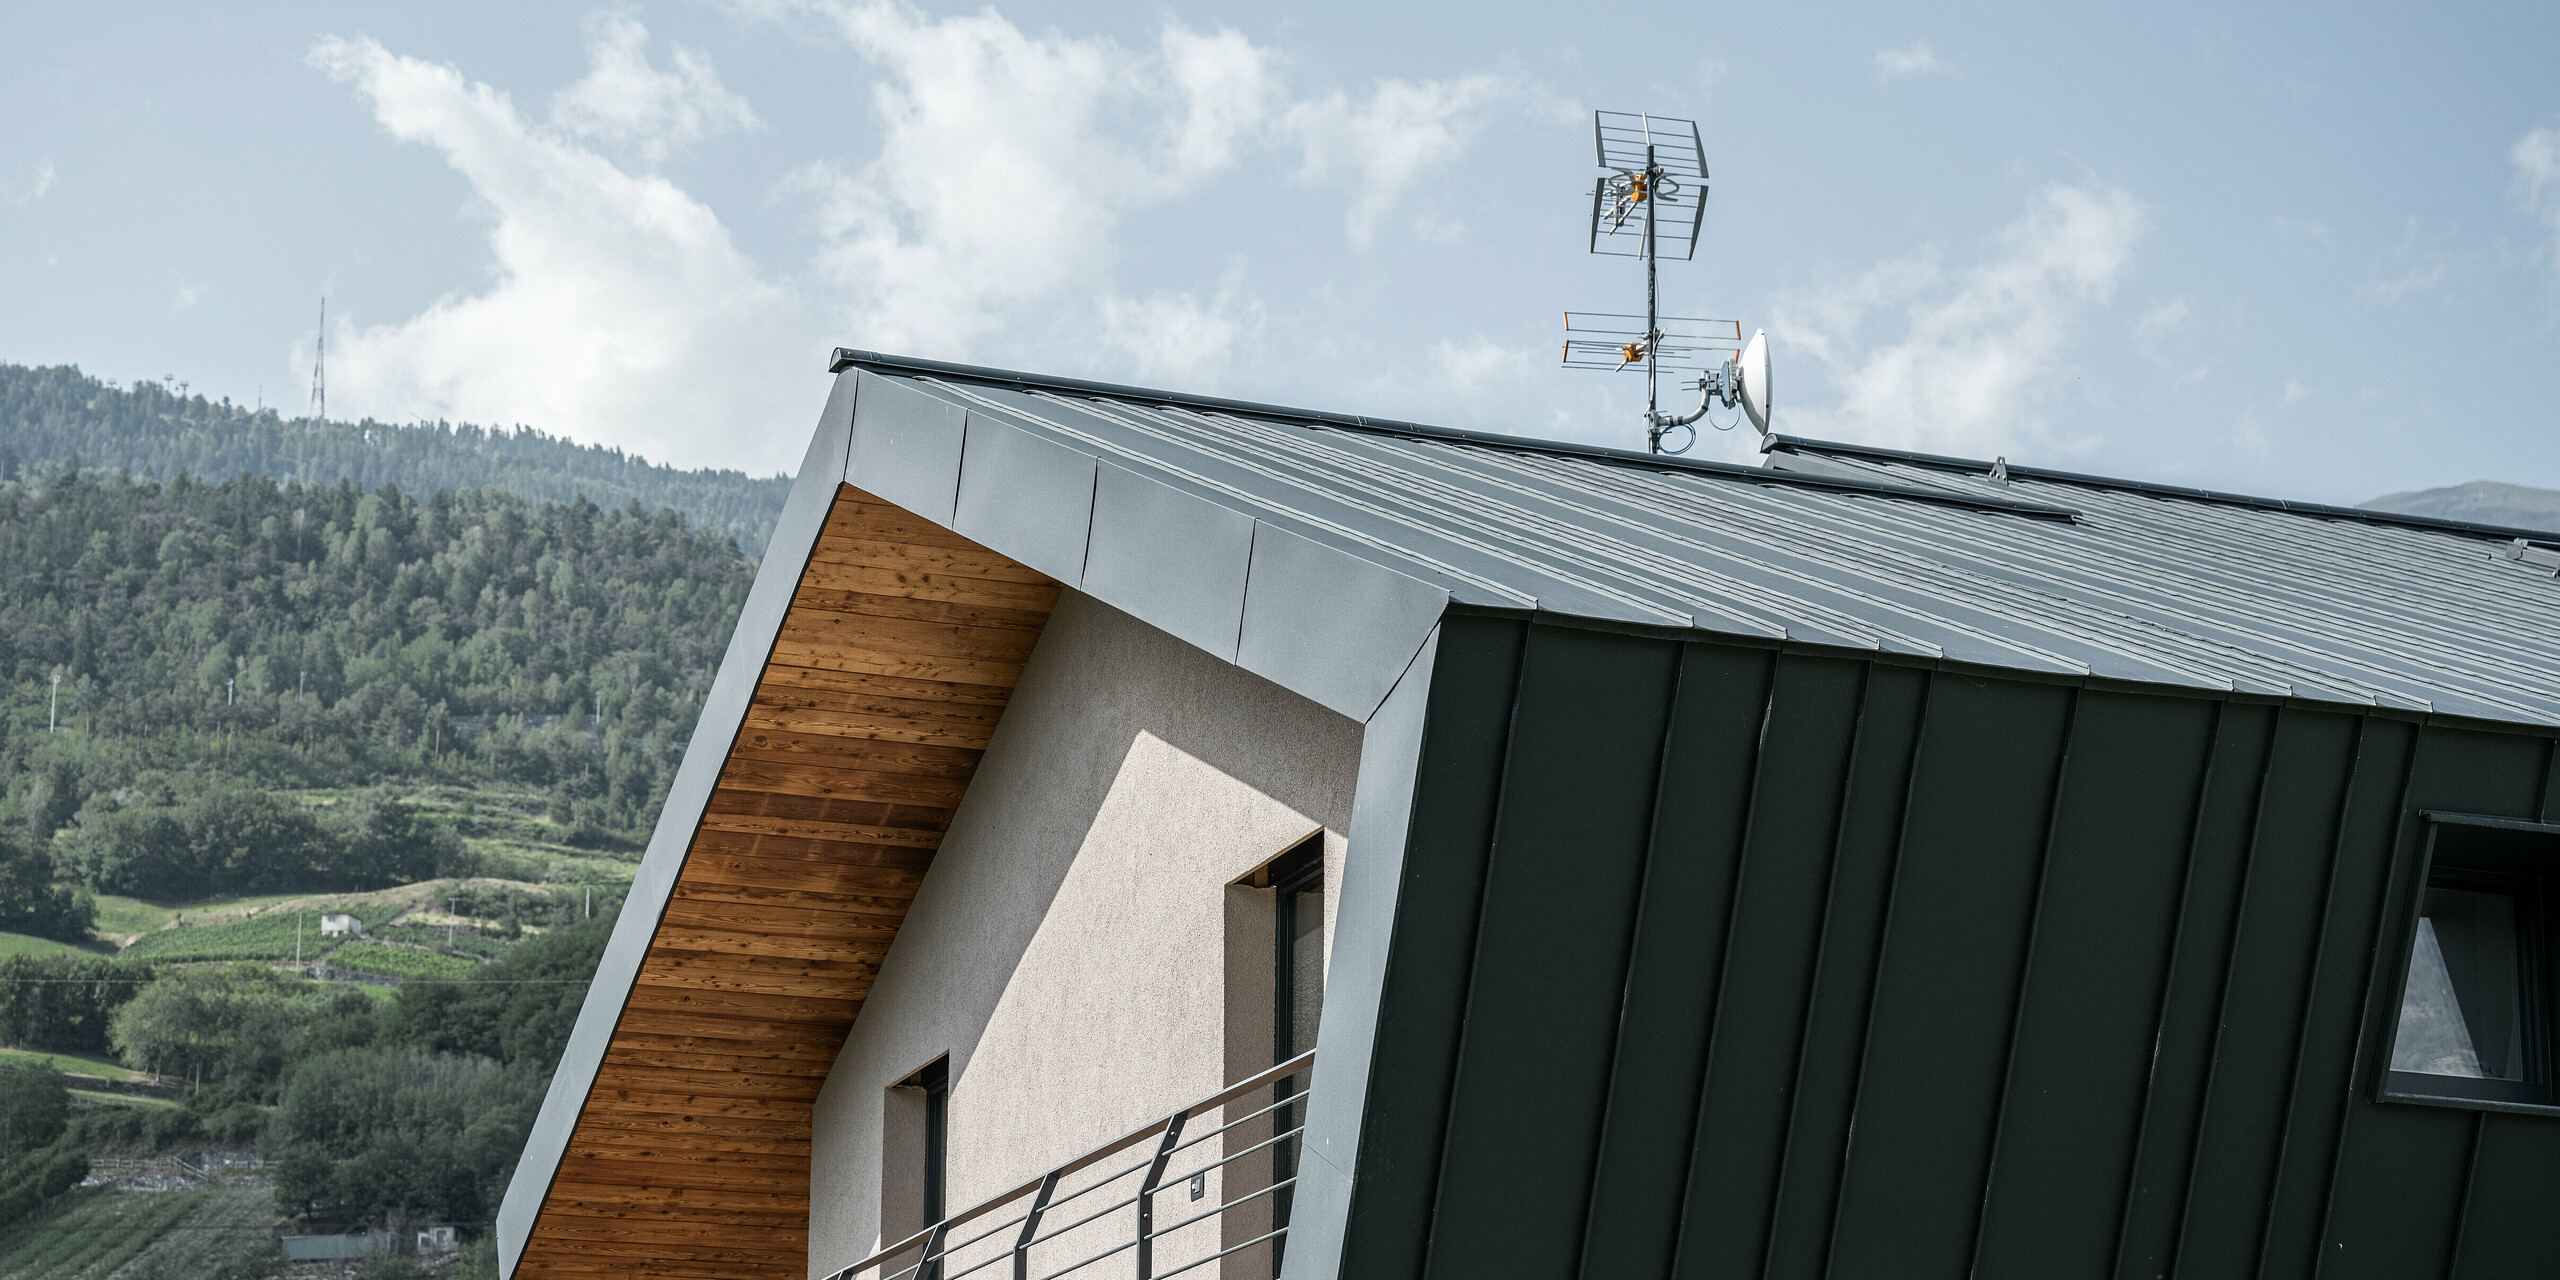 Bočný pohľad na vilu Tia v Taliansku s jednoduchou šikmou strechou. Hliníkový obklad so stojatou drážkou sa tiahne cez odkvapovú rímsu na fasádu v rôznych šírkach. Opláštenie bolo realizované s PREFALZ v elegantnej farbe P.10 antracitová. Viditeľné drevené prvky pod presahom strechy dodávajú architektúre teplo a spojenie s prírodou, zatiaľ čo precízne položené hliníkové prvky zabezpečujú moderný, odolný a na údržbu nenáročný vonkajší plášť.